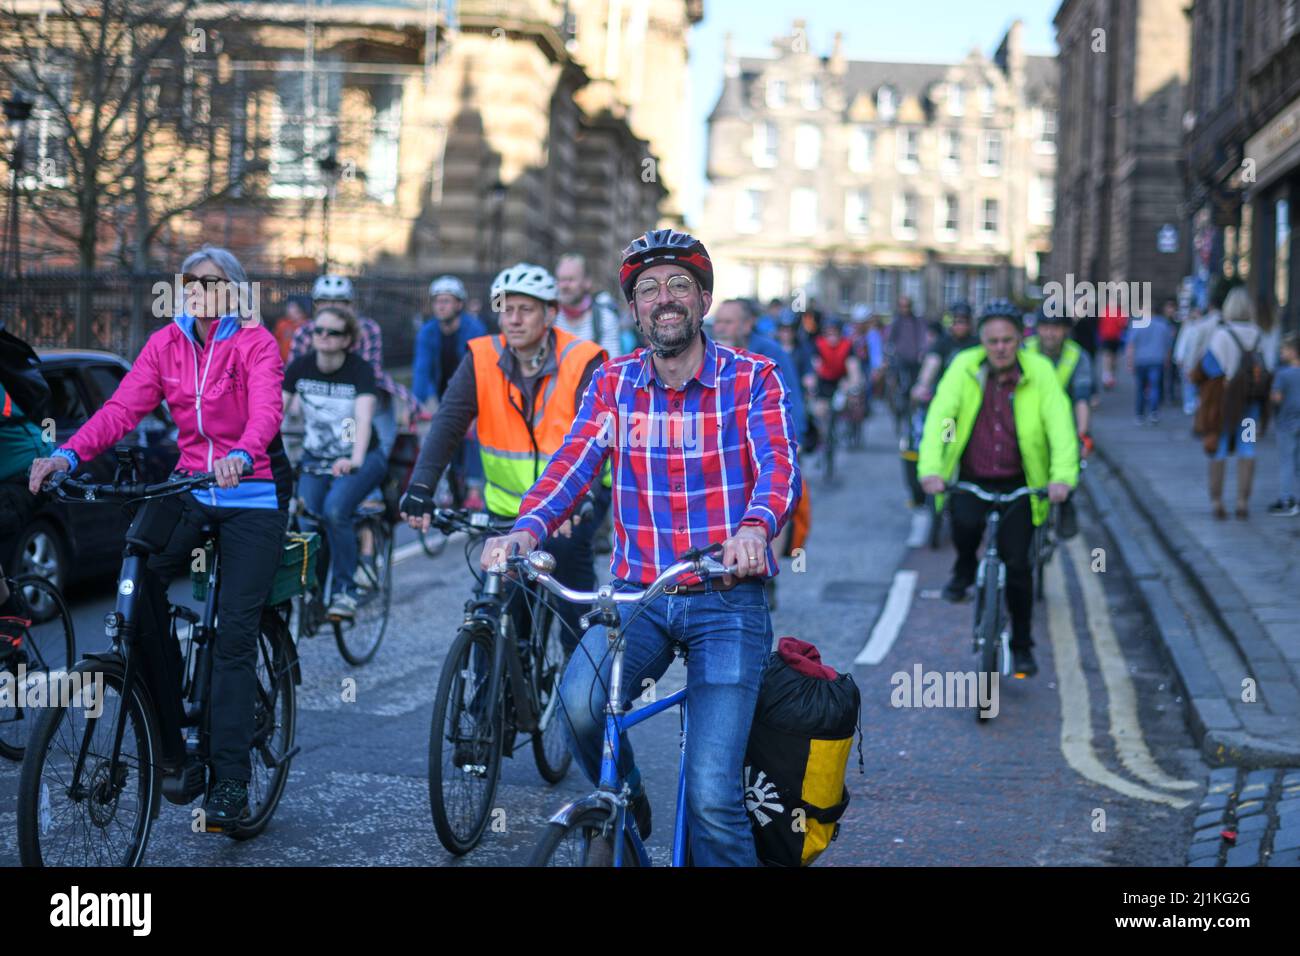 Edimburgo Scozia, Regno Unito marzo 26 2022. Edinburgh Critical Mass Cycle, Stockbridge saunter, si svolge attraverso la città con centinaia di partecipanti come transizione della società dalle automobili a forme di trasporto più sostenibili. Credit sst/alamy live news Foto Stock